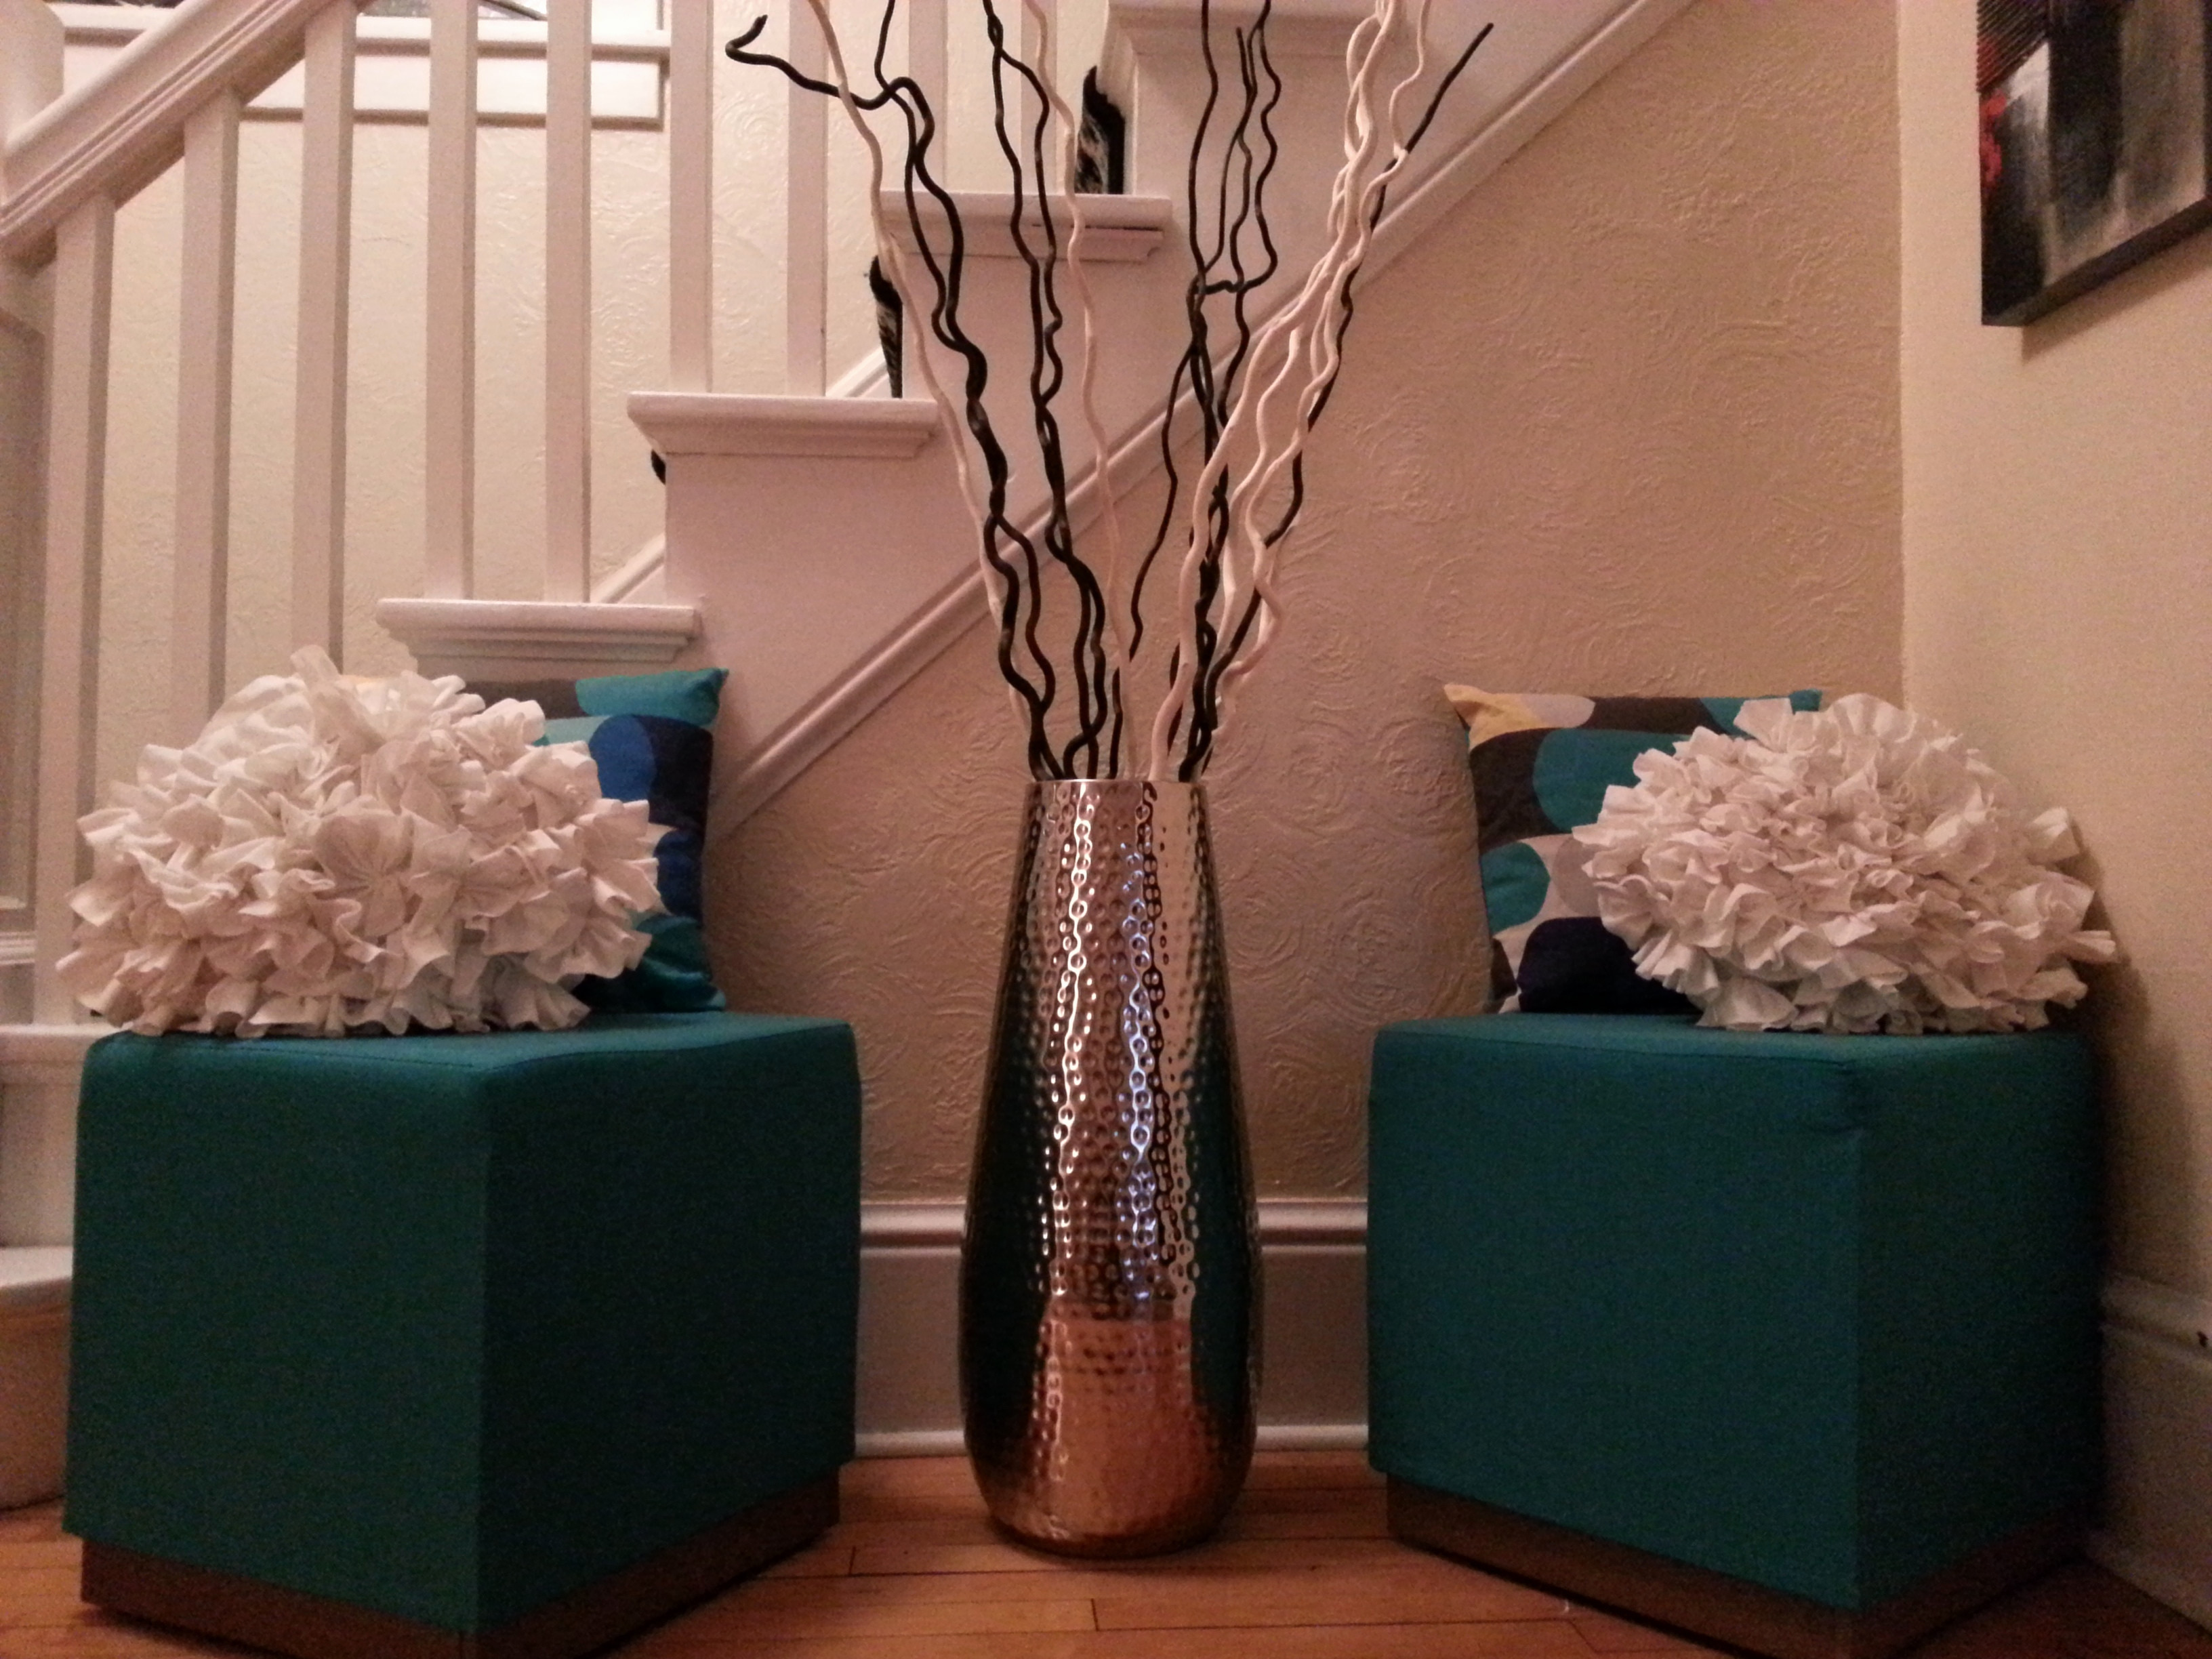 Long Corner Flower Vase In Living Room